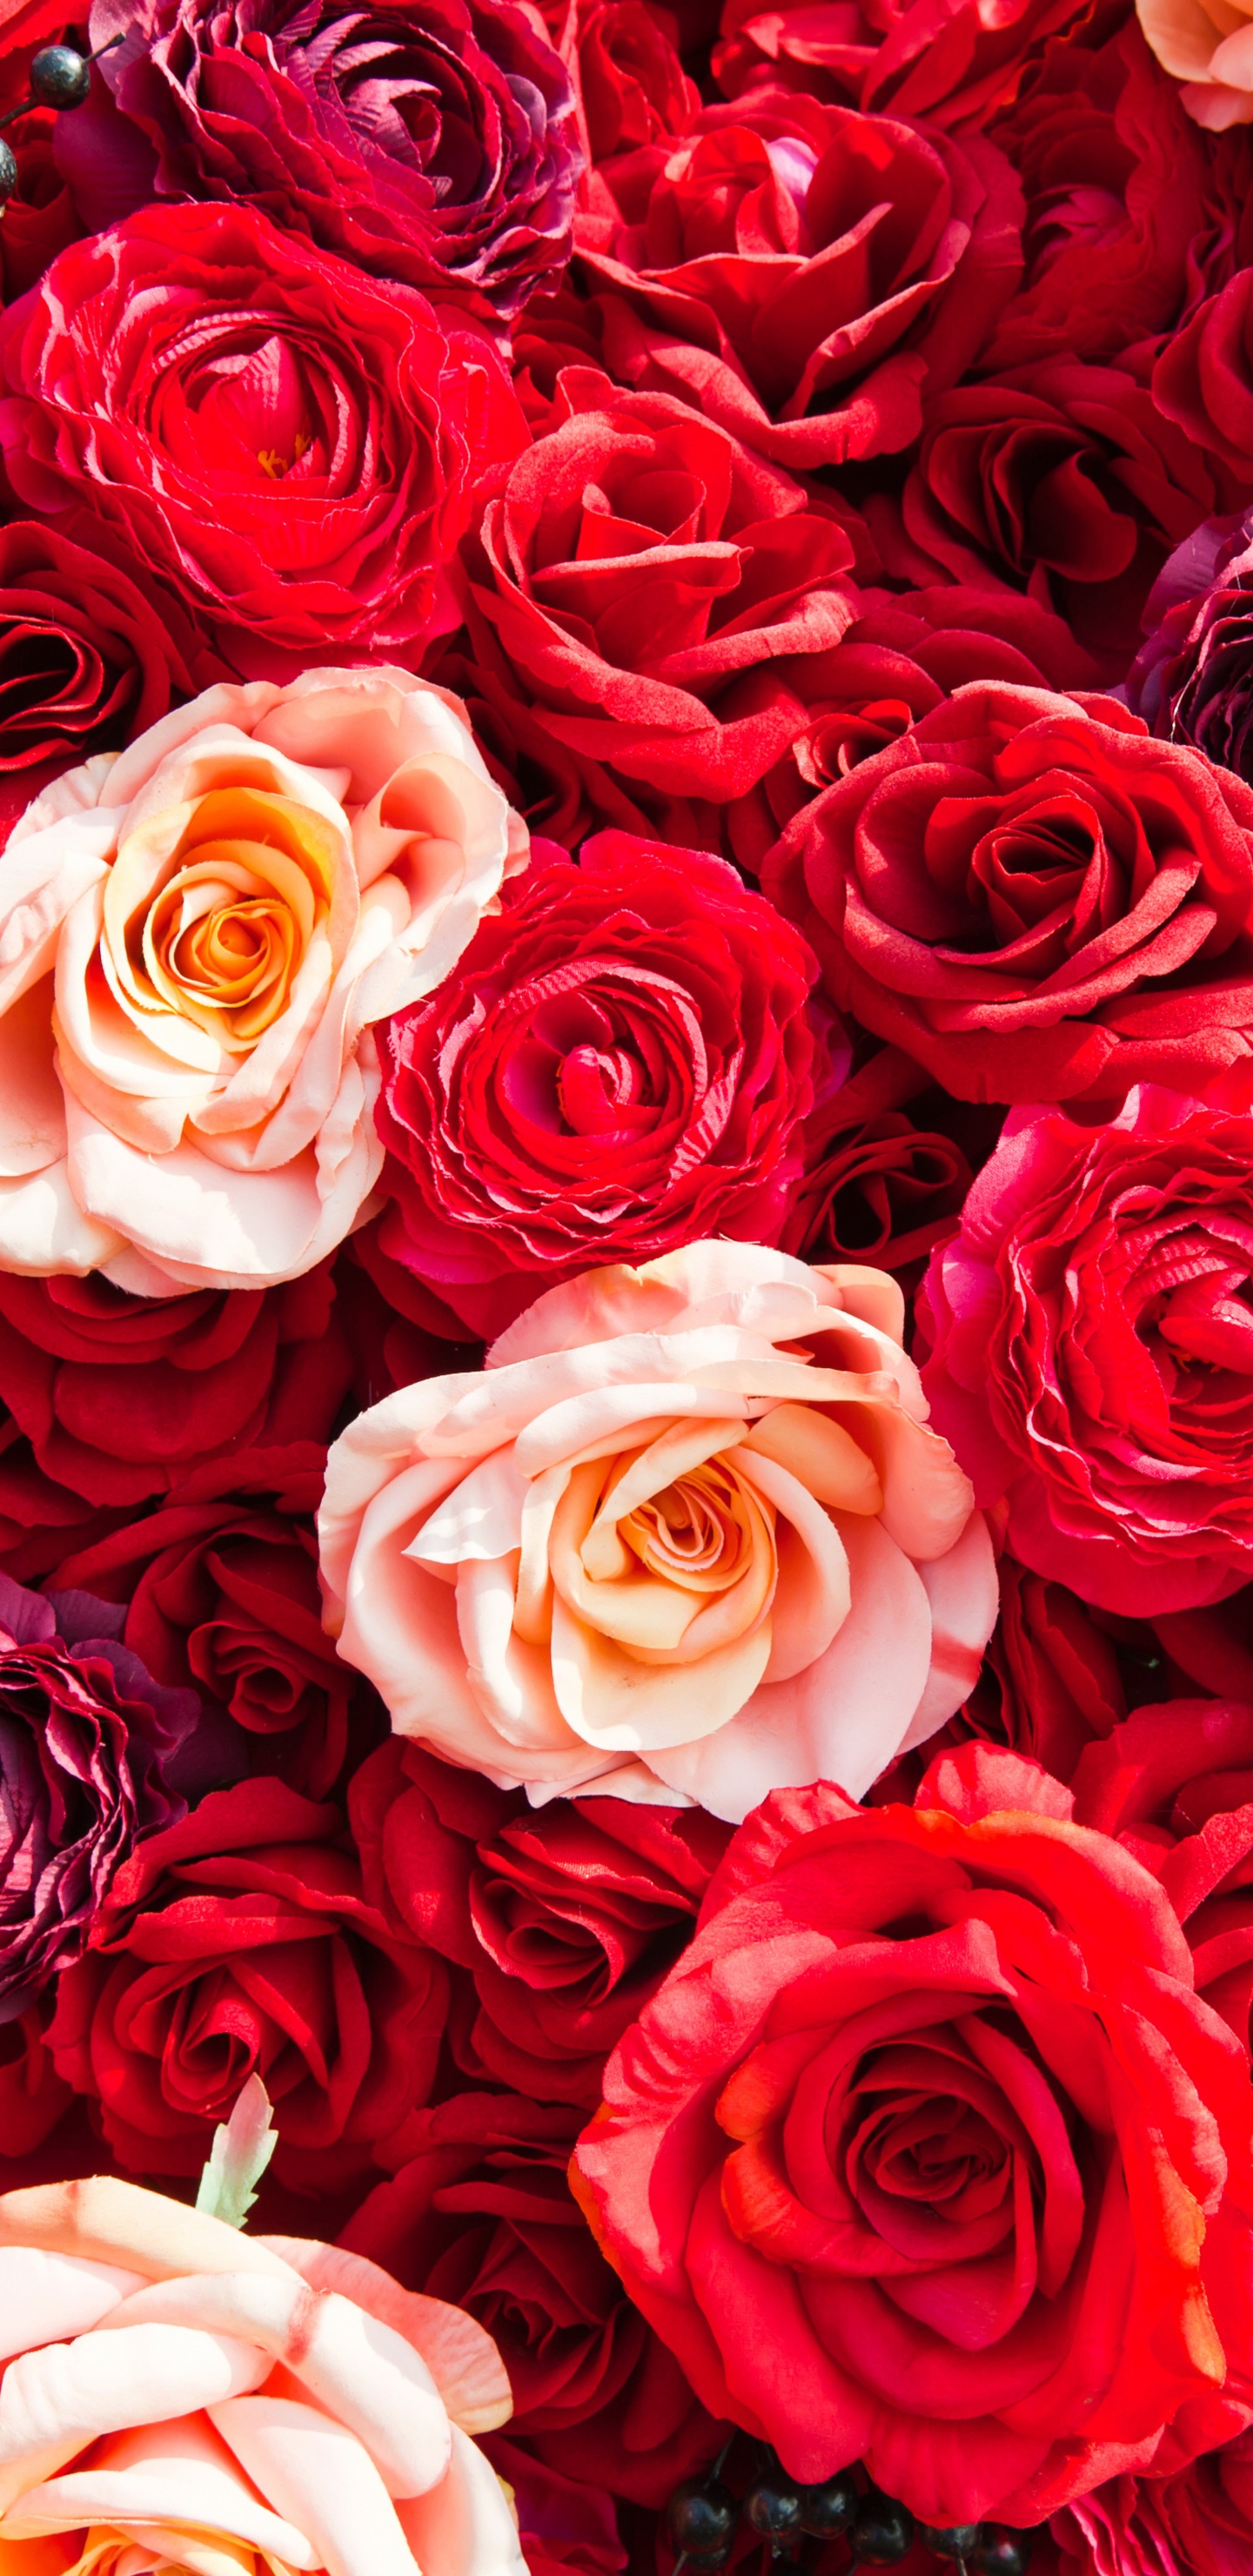 玫瑰花园, 红色的, 玫瑰家庭, 切花, 创造性的艺术 壁纸 1440x2960 允许